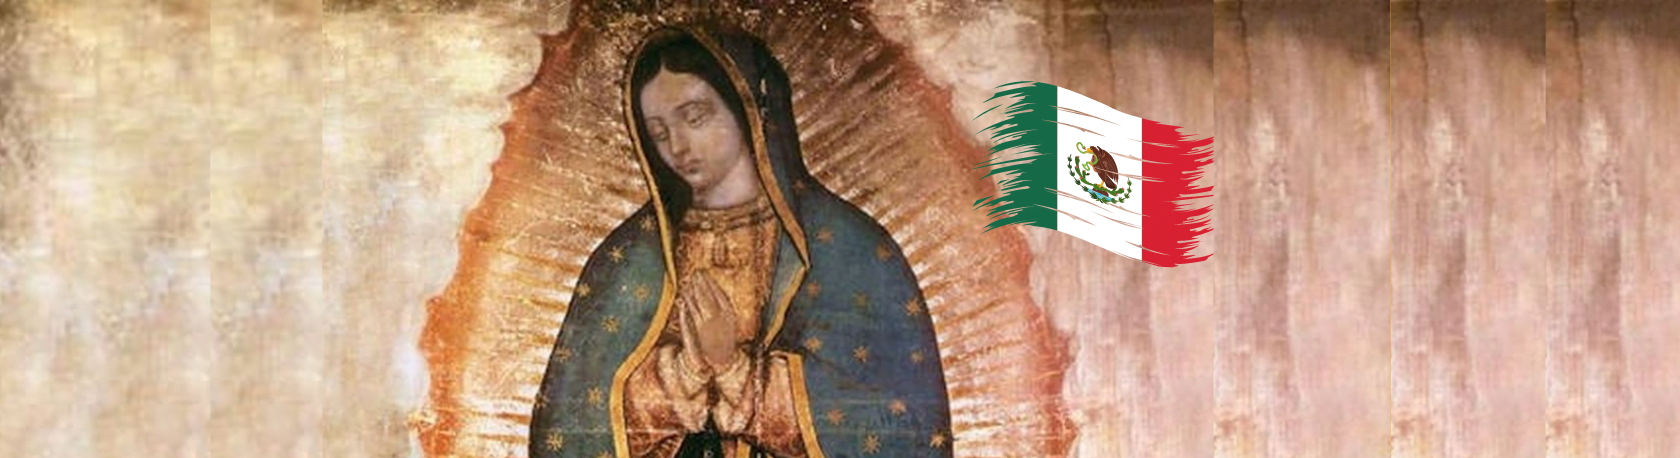 Easy Podcast - El Día de la Virgen de Guadalupe - Easy Español